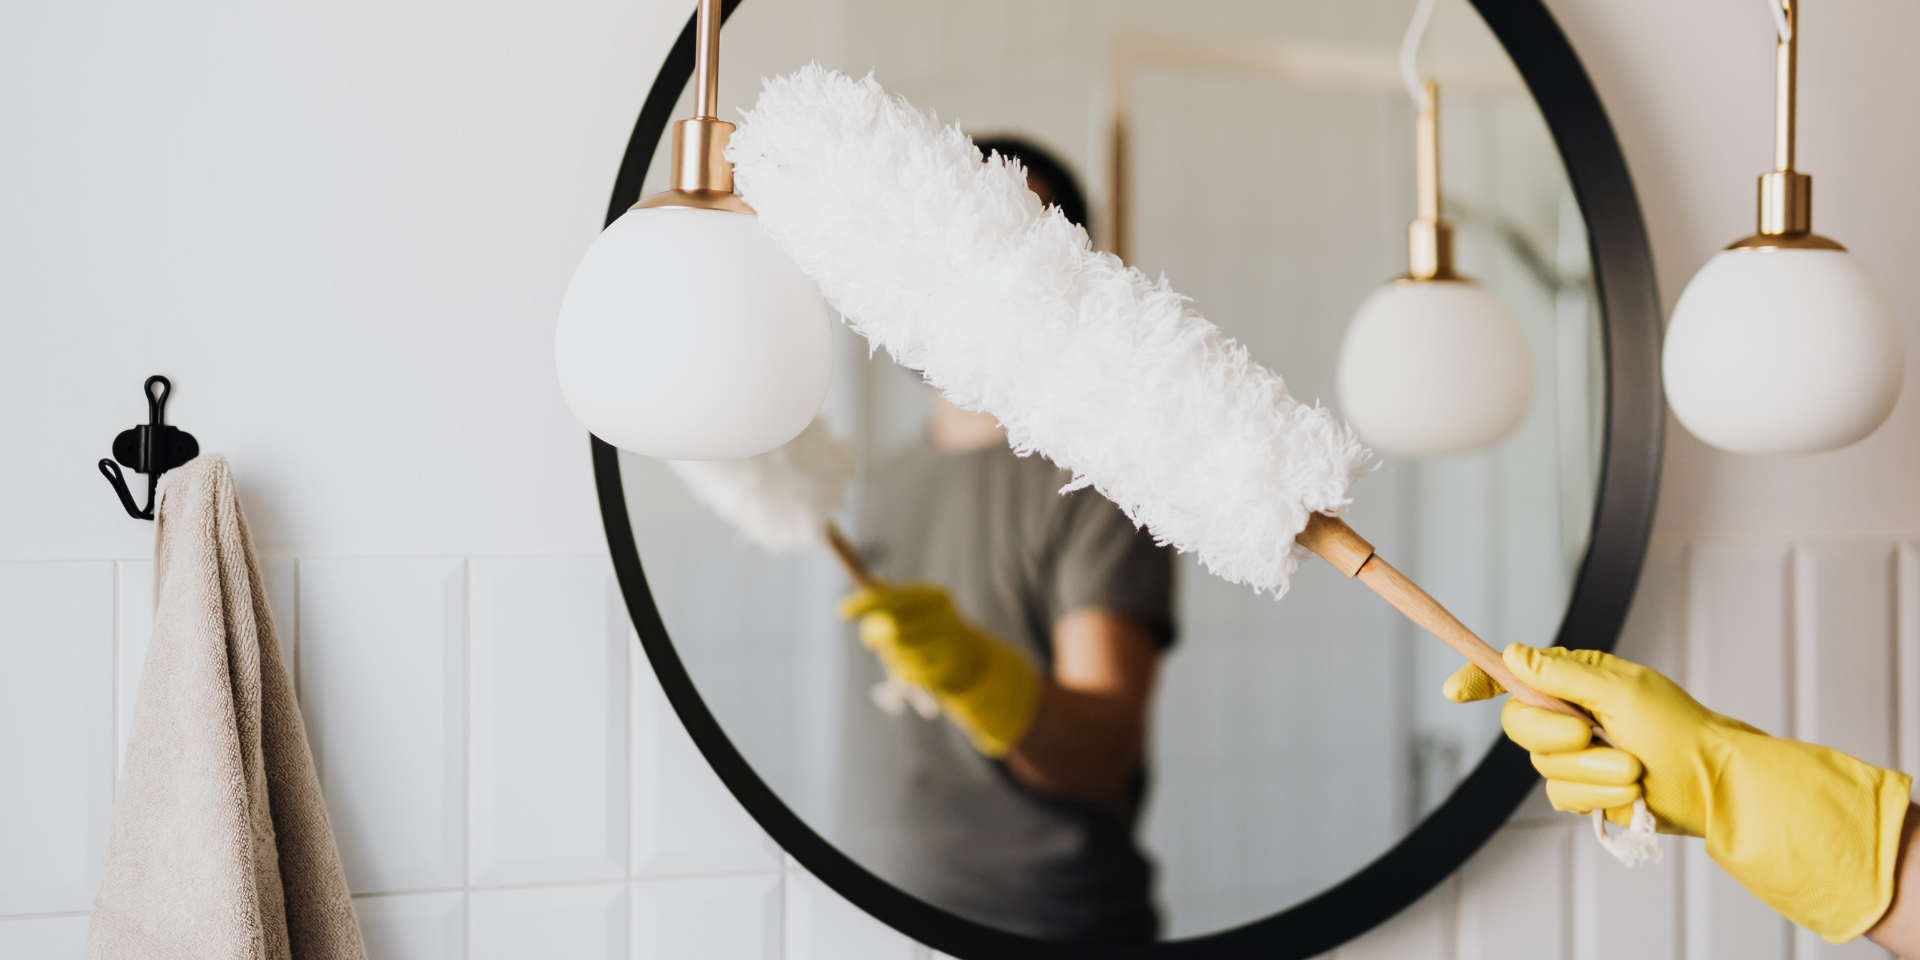 پاک کردن آینه از کارهای مهم تمیزکزدن حمام